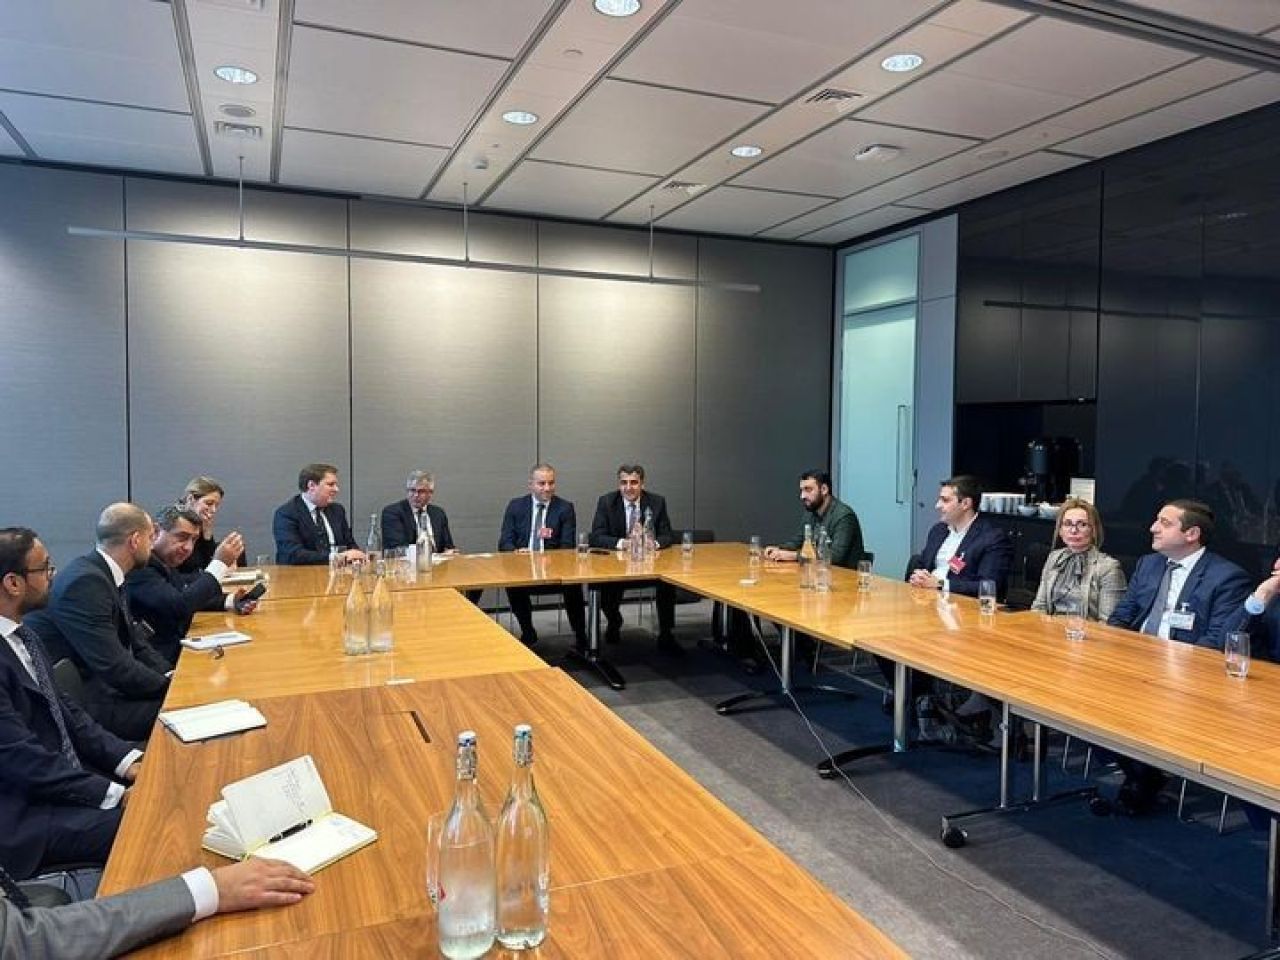 Վահան Քերոբյանը Լոնդոնում հանդիպում է ունեցել HSBC բանկի ներկայացուցիչների հետ